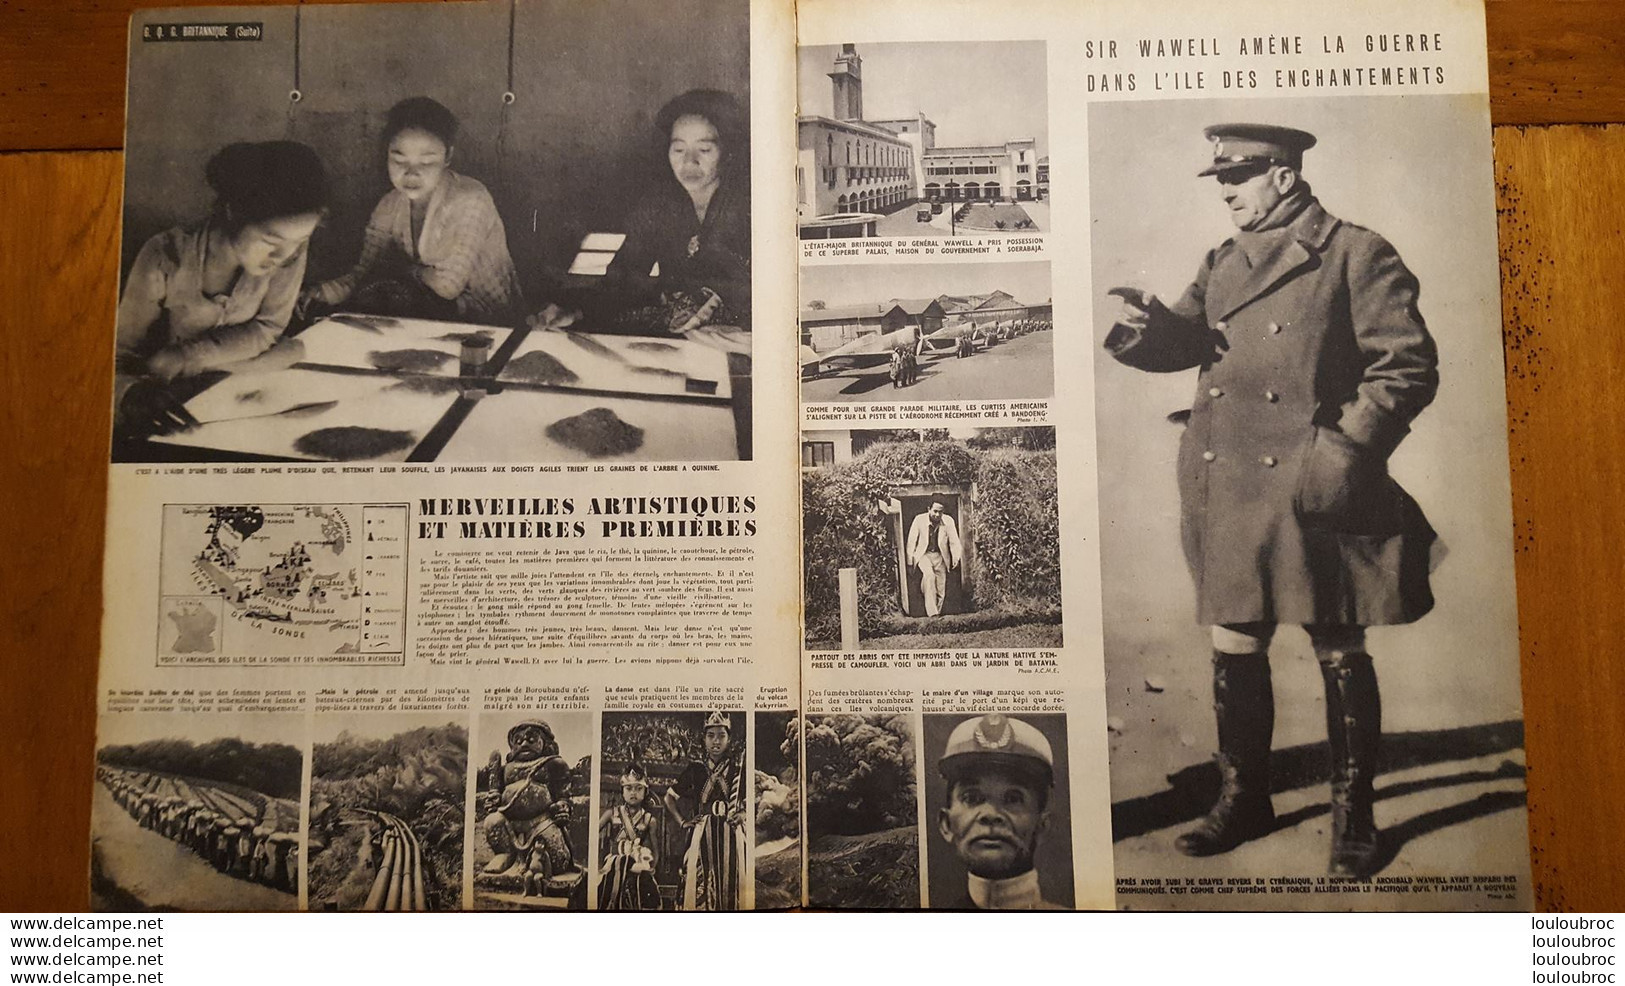 TOUTE LA VIE JANVIER 1942  N°23  REVUE DE 16 PAGES - French